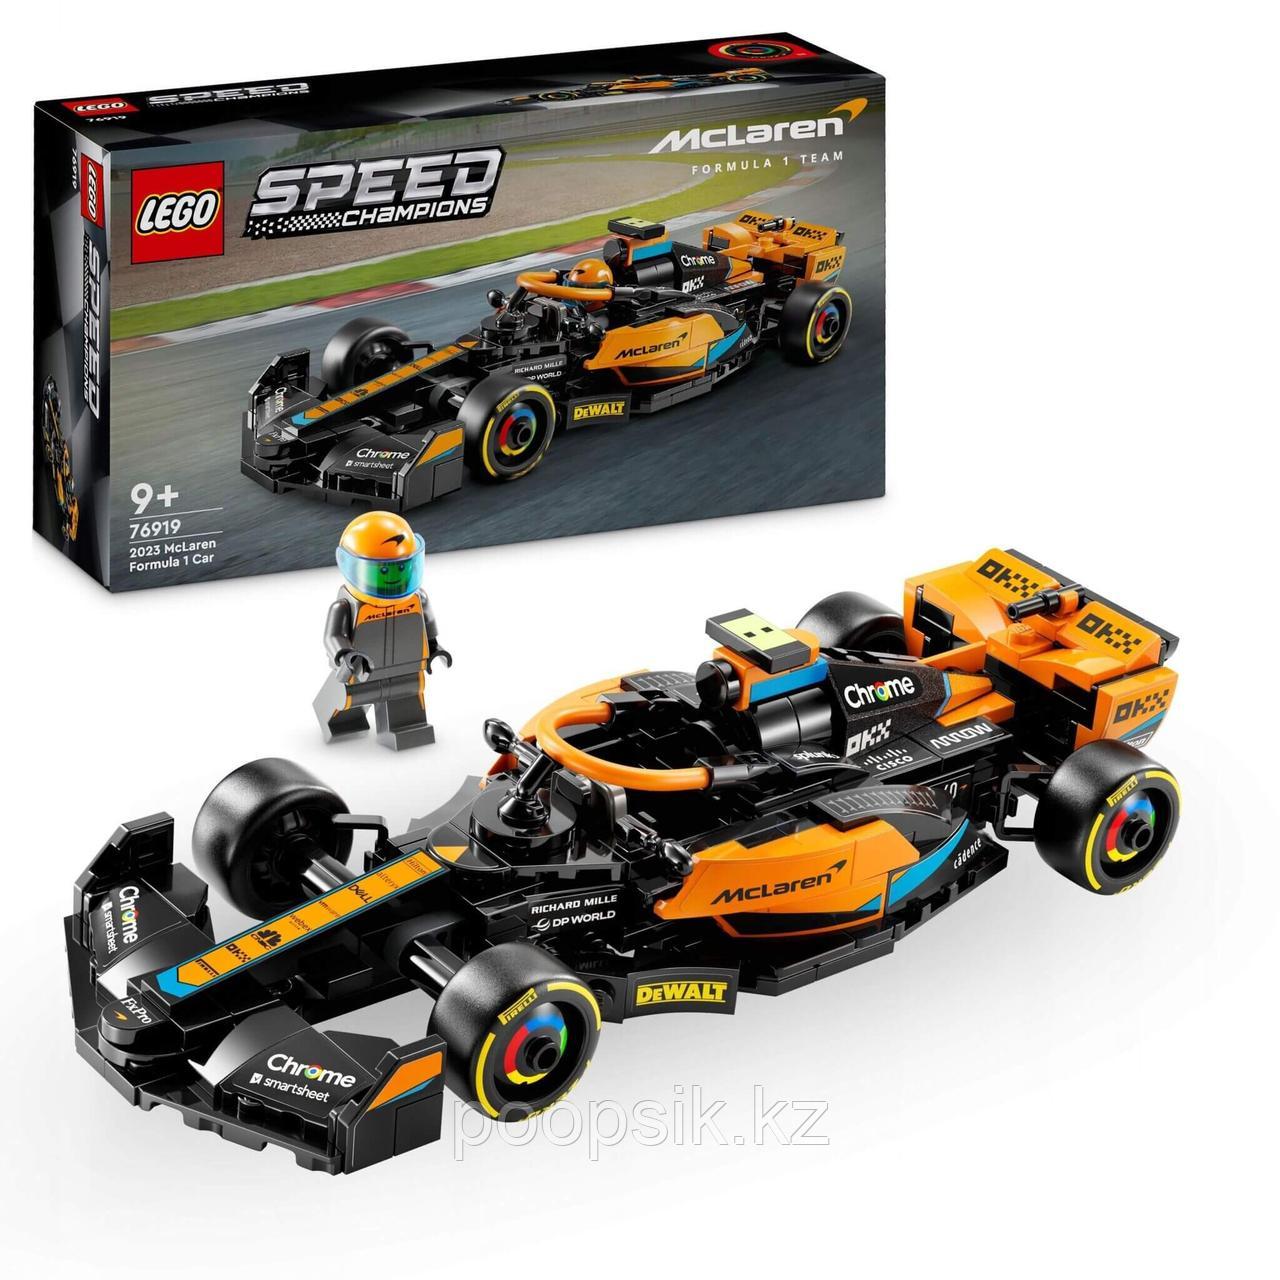 Lego Speed Champions Гоночный автомобиль Формулы 1 McLaren 76919